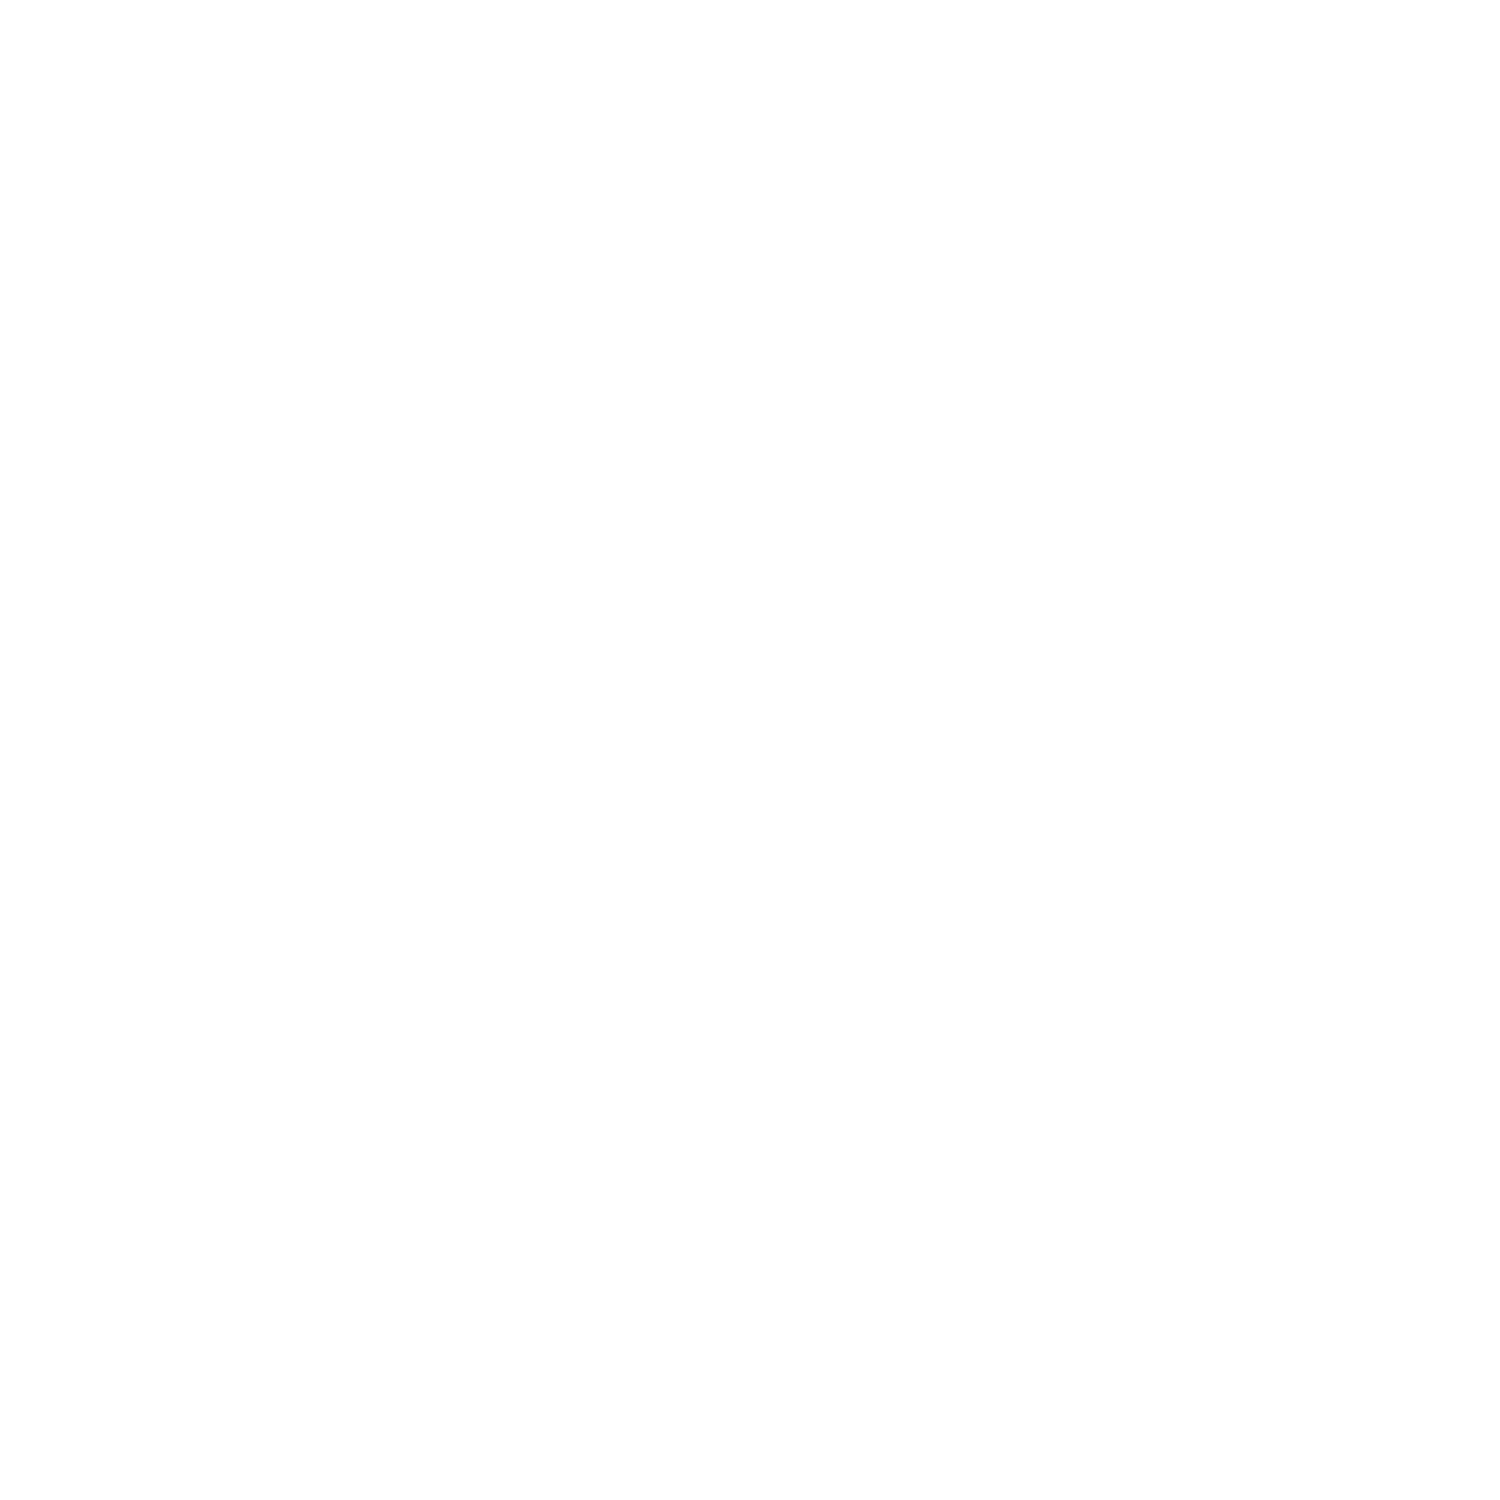 Studio369